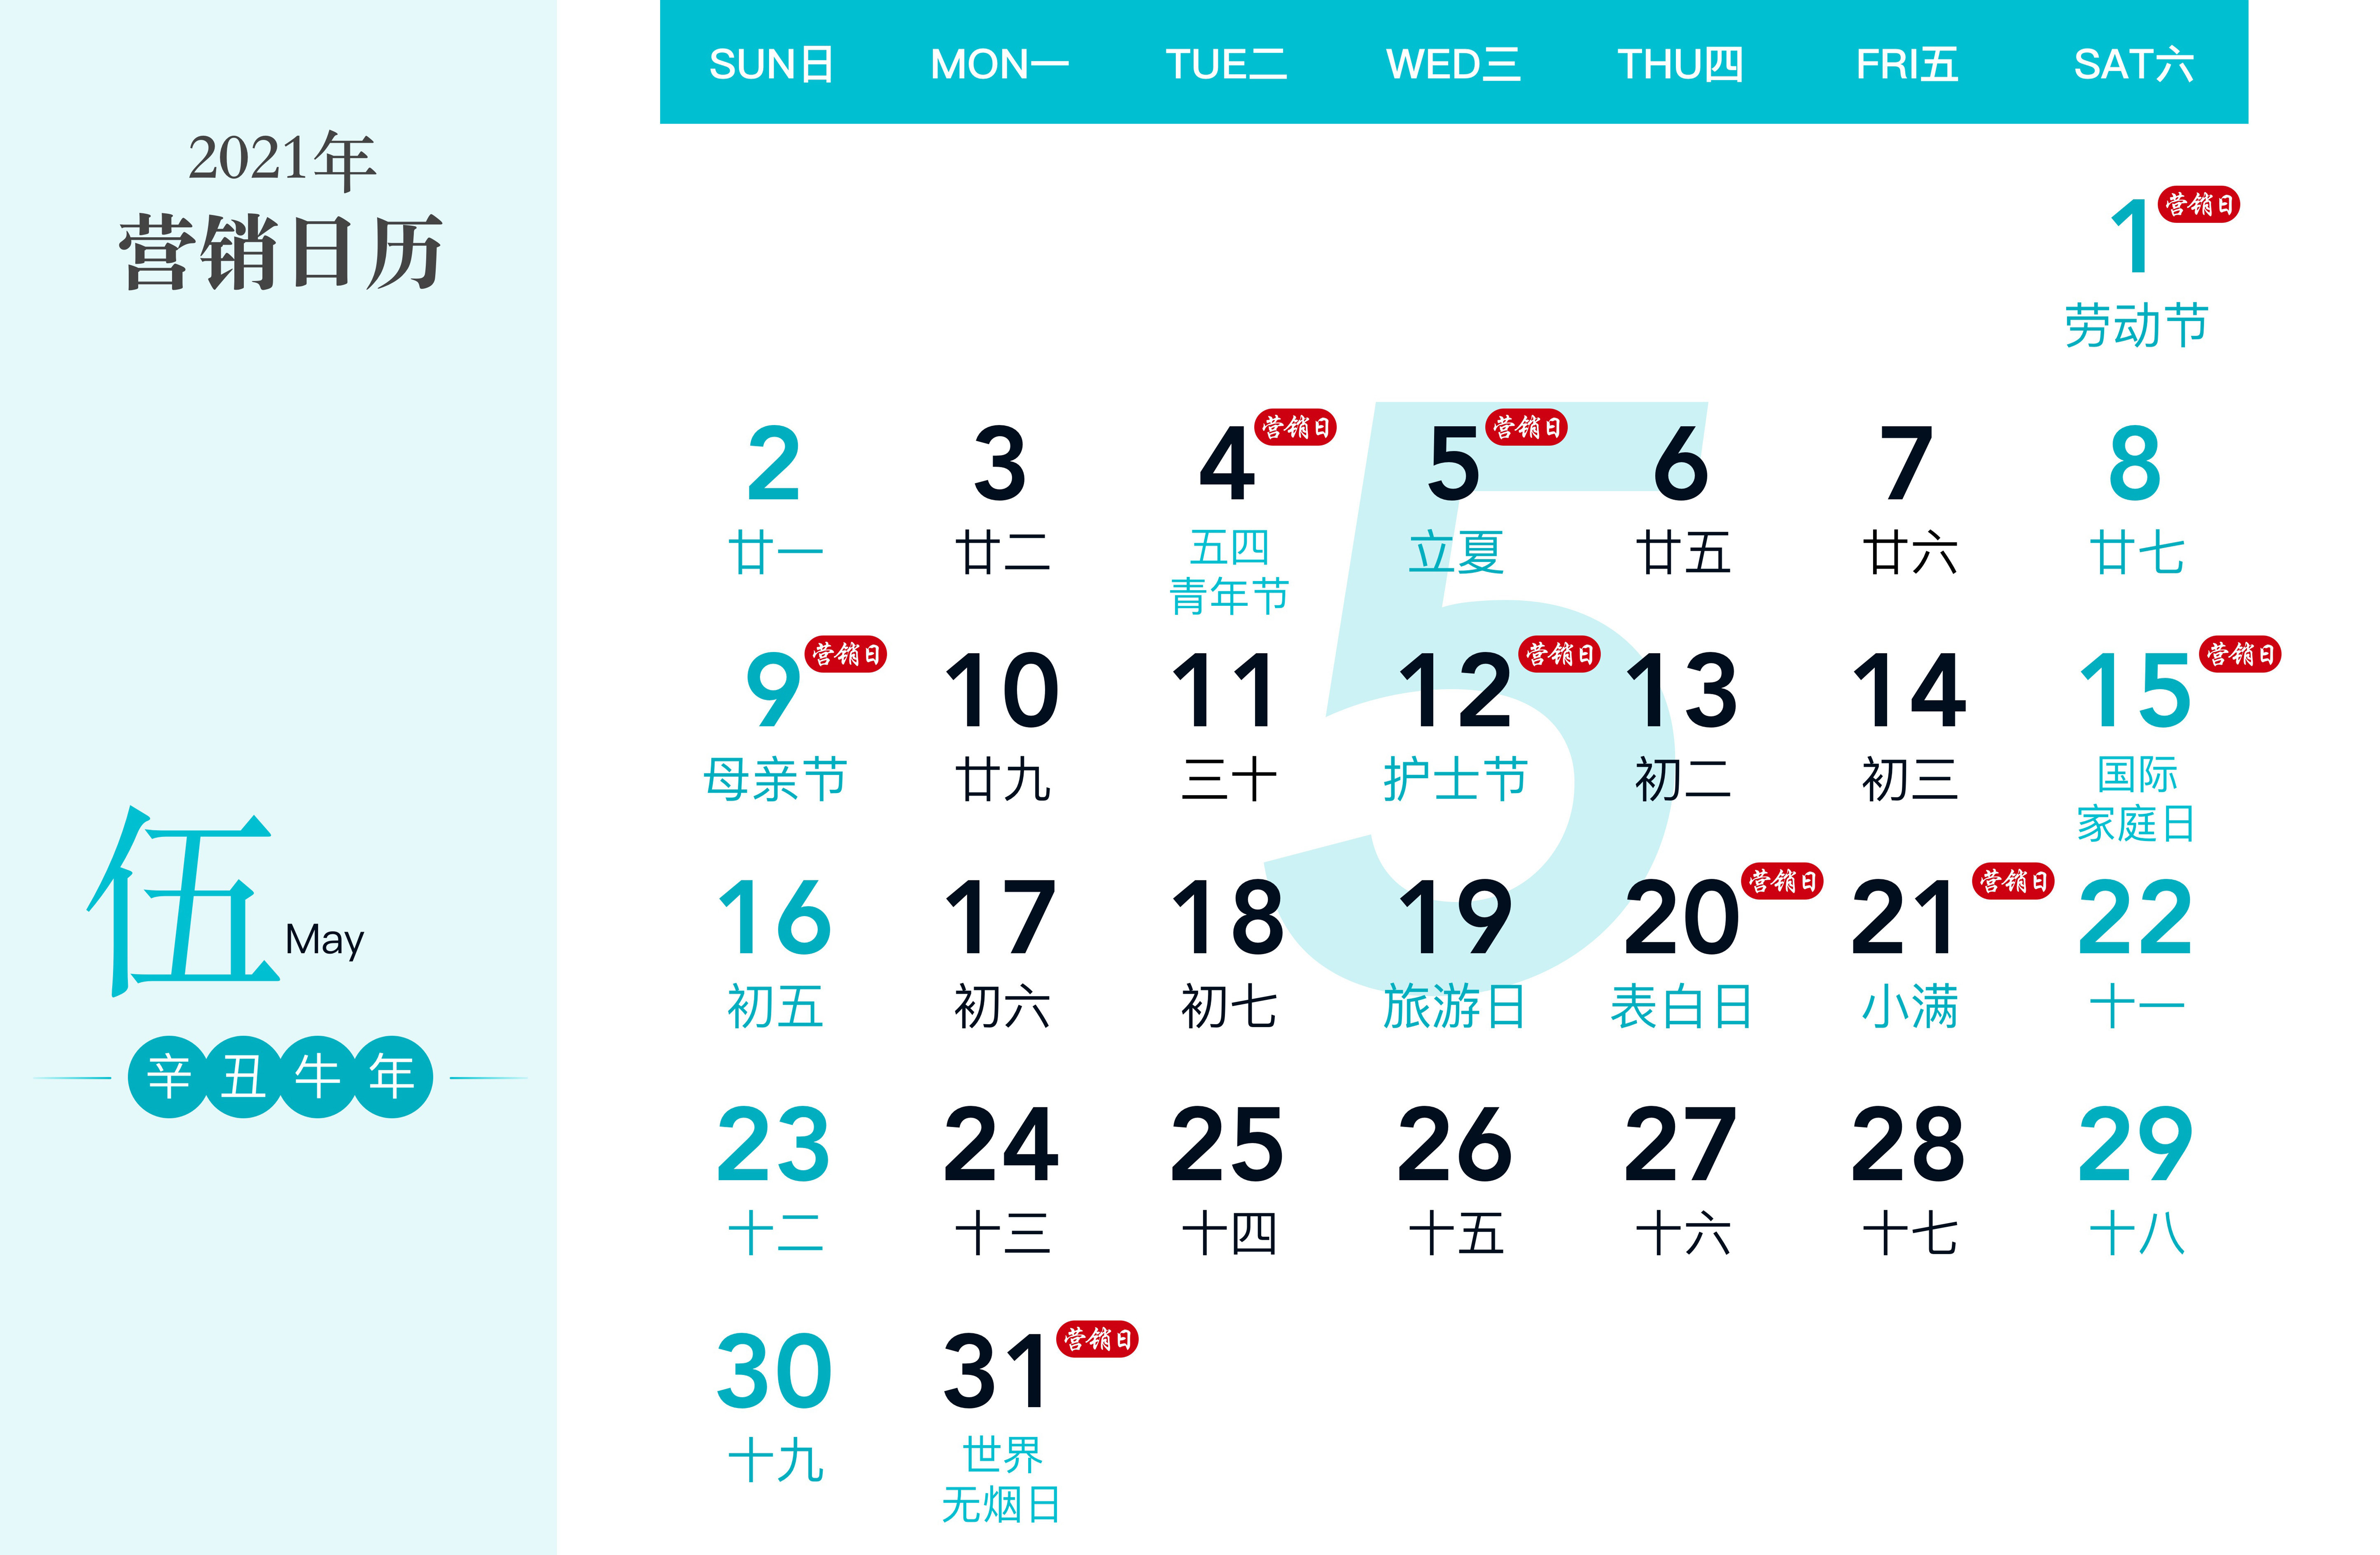 过硬2021营销日历：品牌借势营销神器，覆盖全年热点话题！